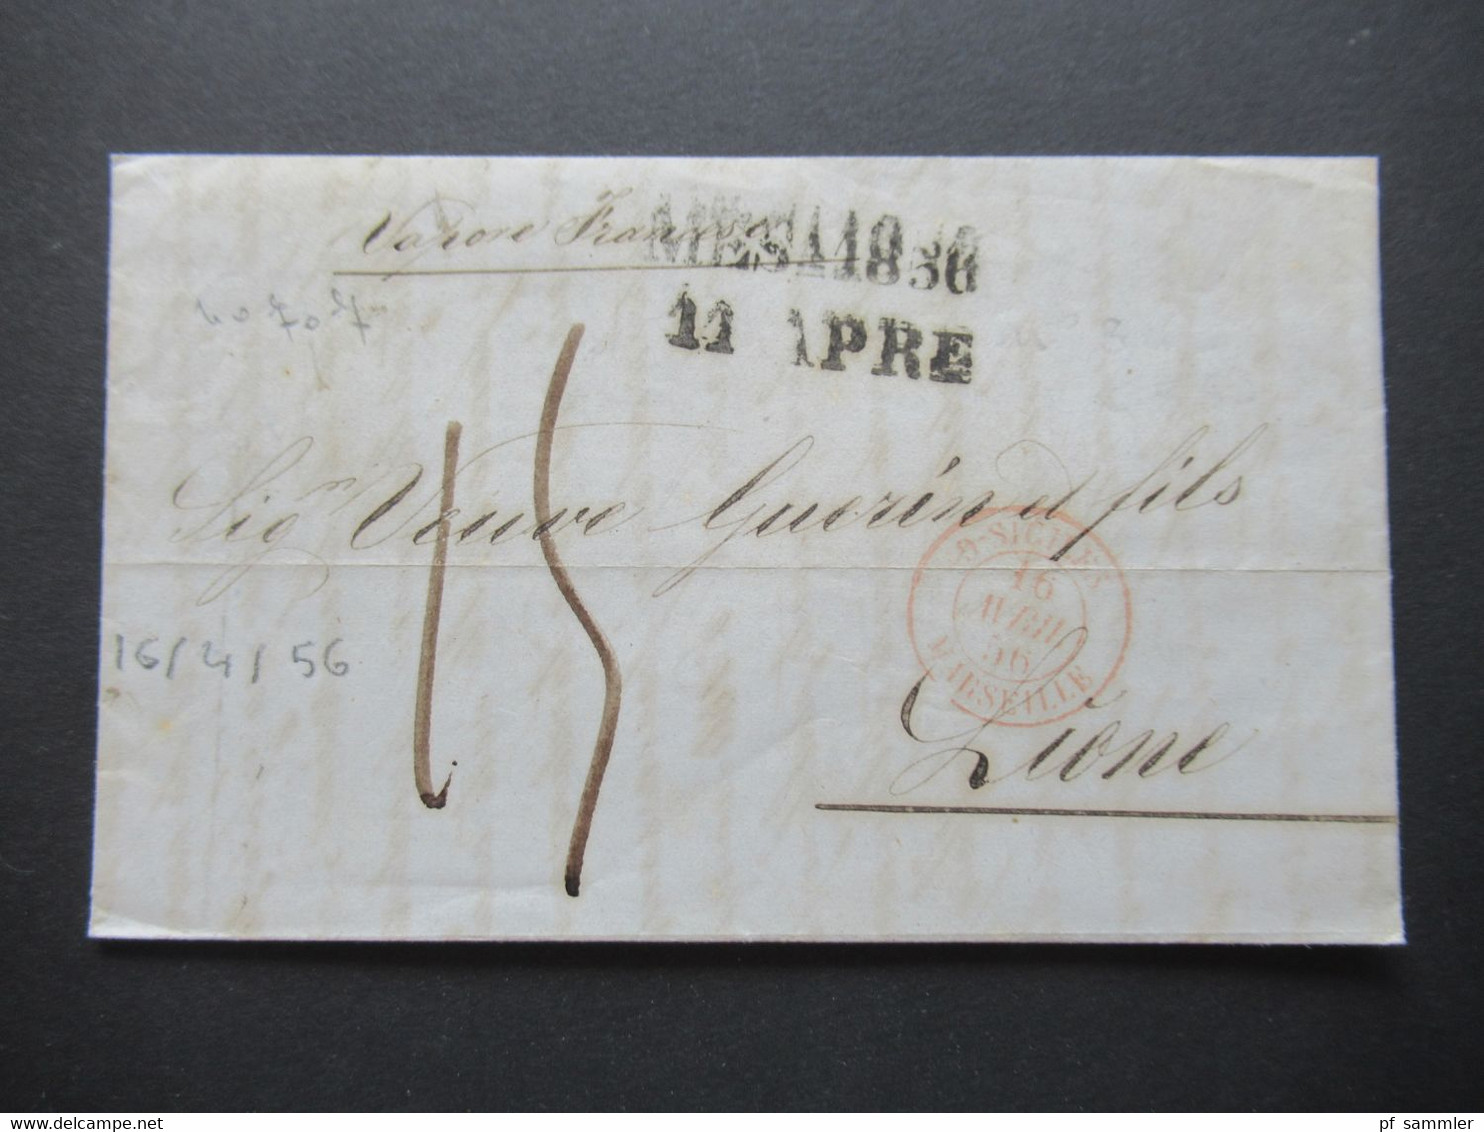 Italien 1856 Faltbrief Mit Inhalt/ Auslandsbrief Messina - Lione Schiffspost?! Handschriftlicher Vermerk Vapore Francese - Sicilia